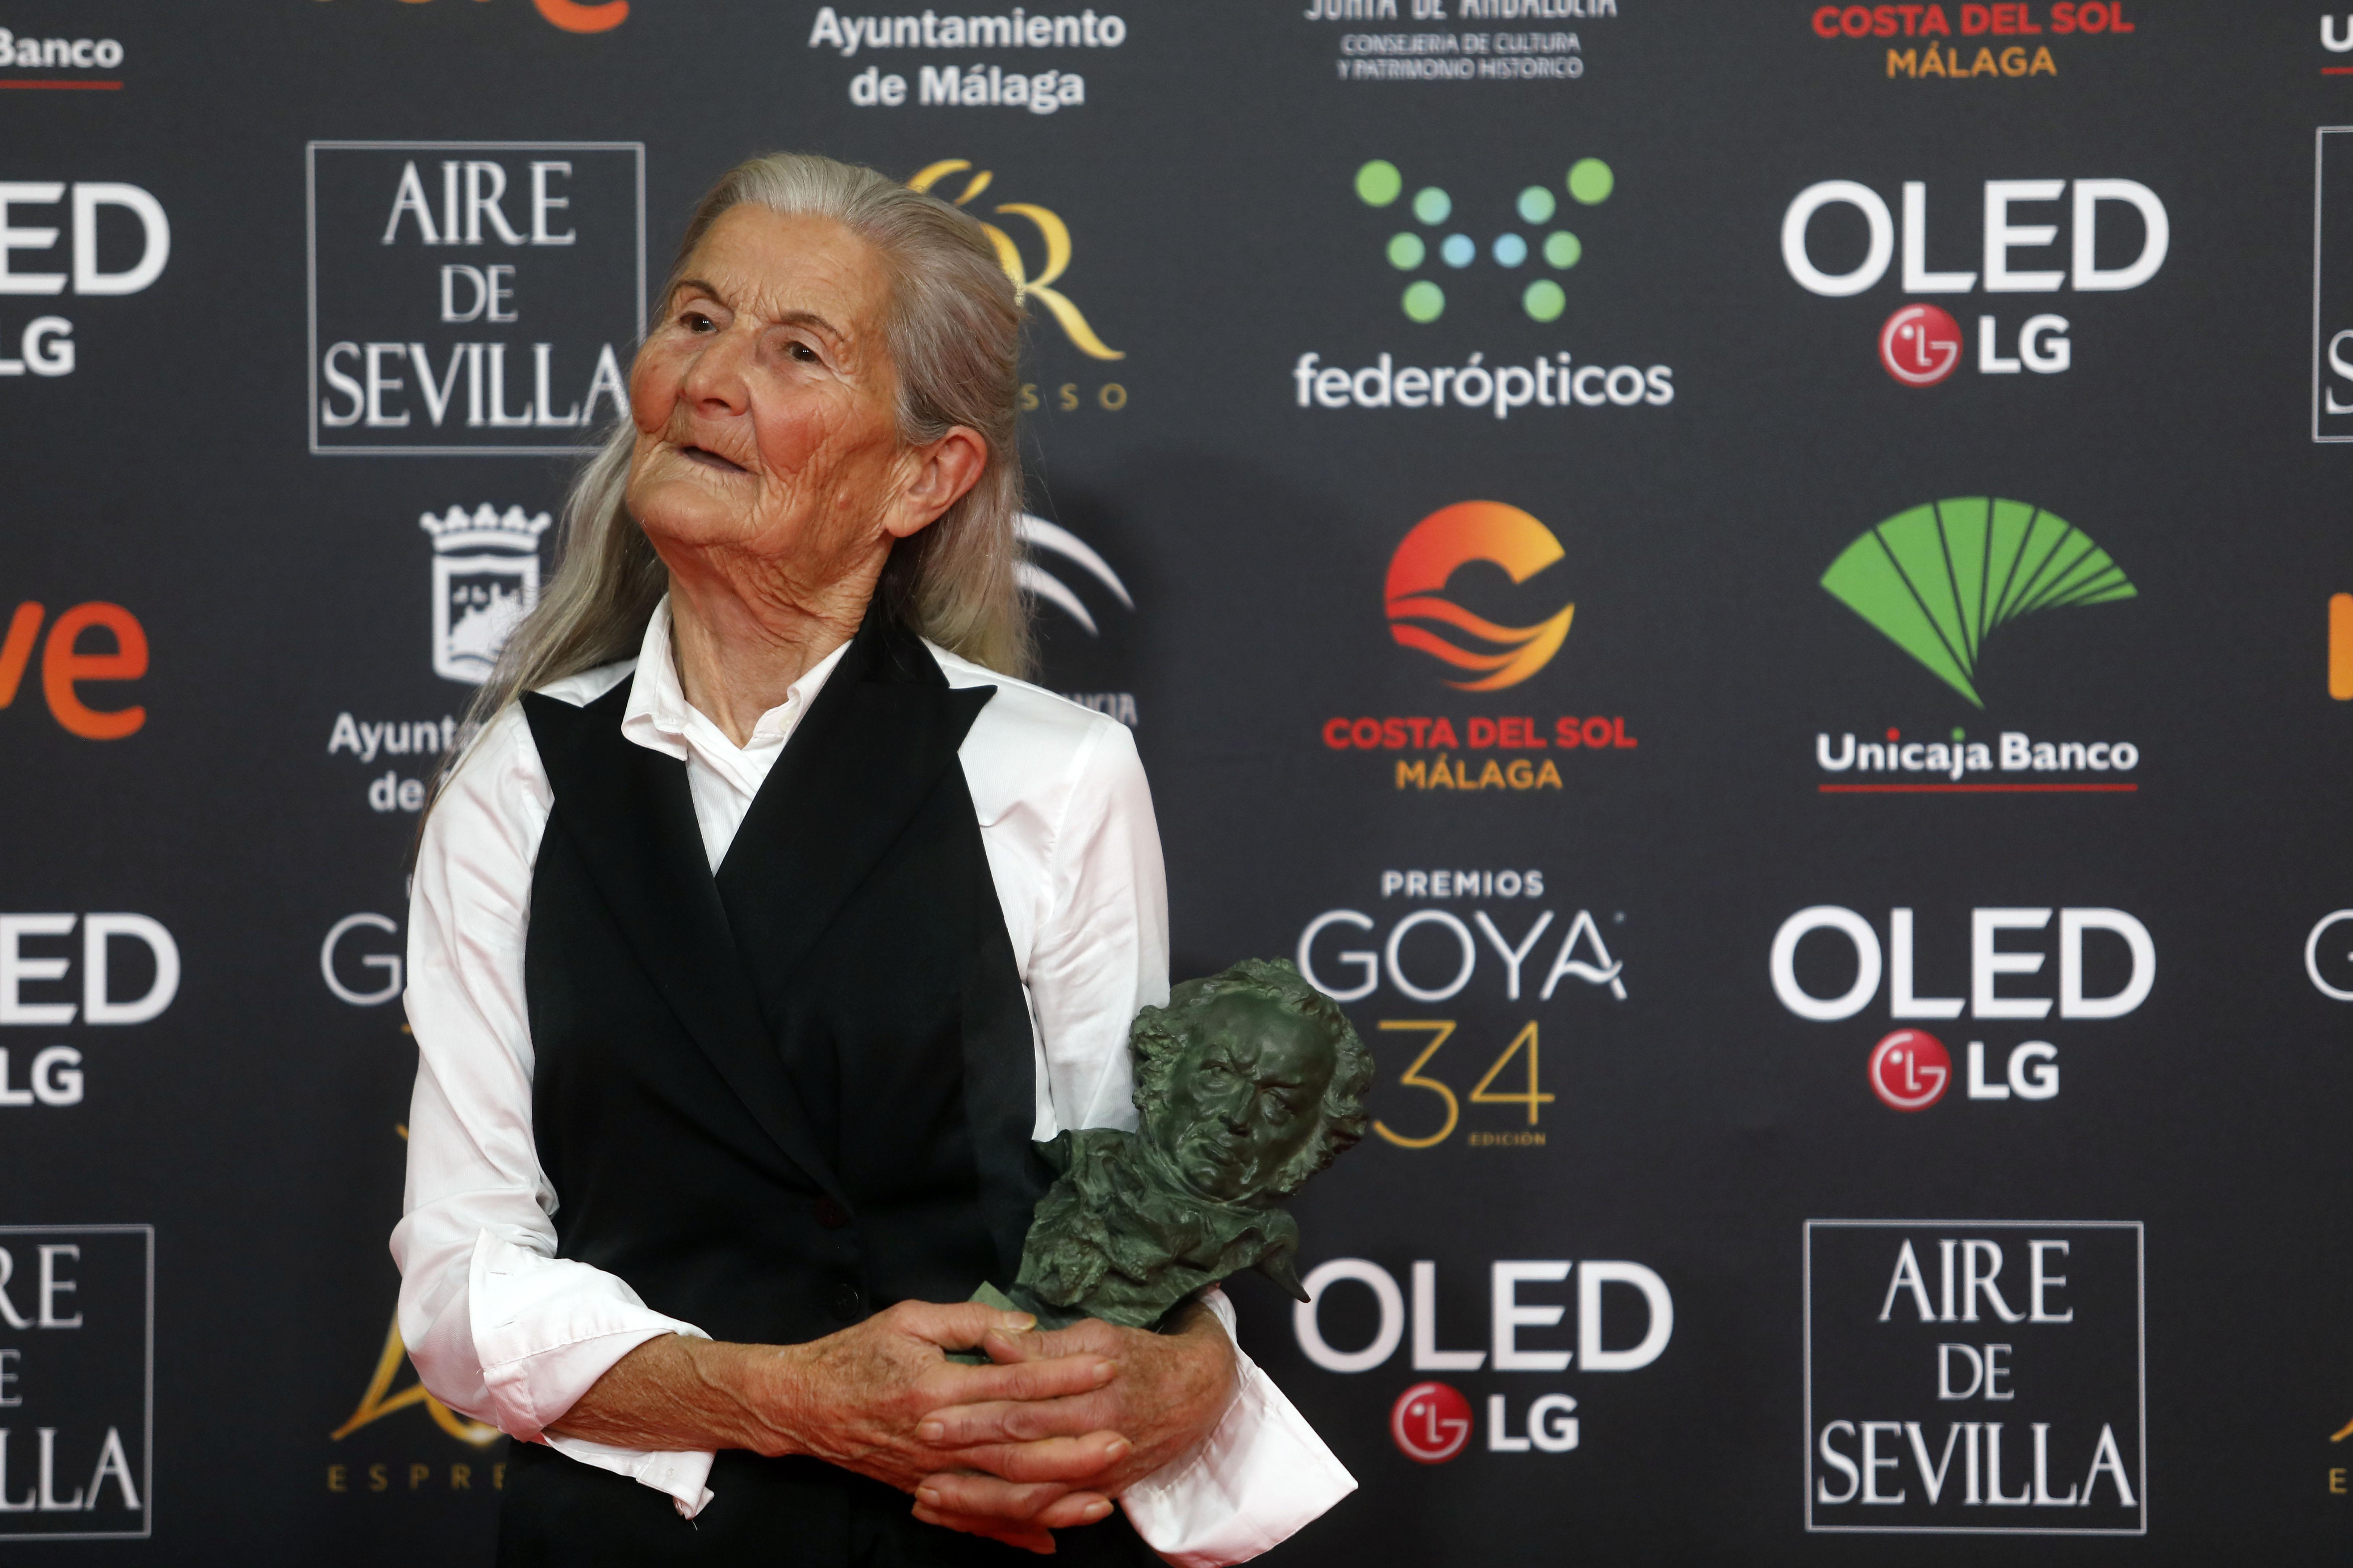 Benedicta Sánchez mejor actriz revelación durante la XXXIV edición de los Premios Goya en Málaga (Andalucía España) a 25 de enero de 2020 